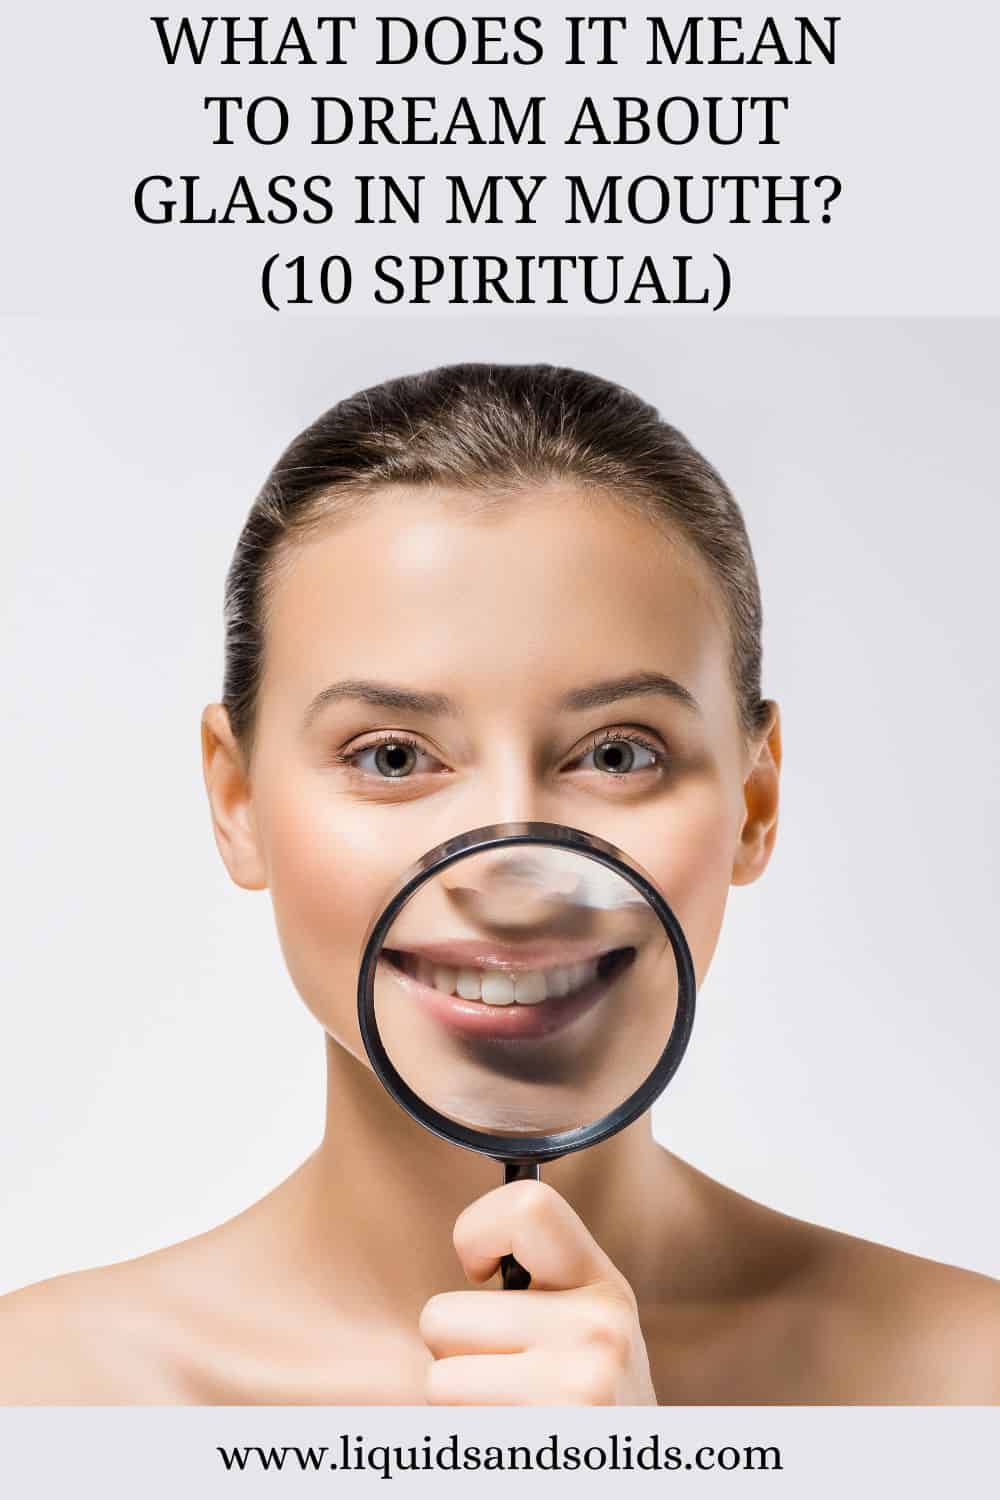  Rêve de verre dans la bouche (10 significations spirituelles)